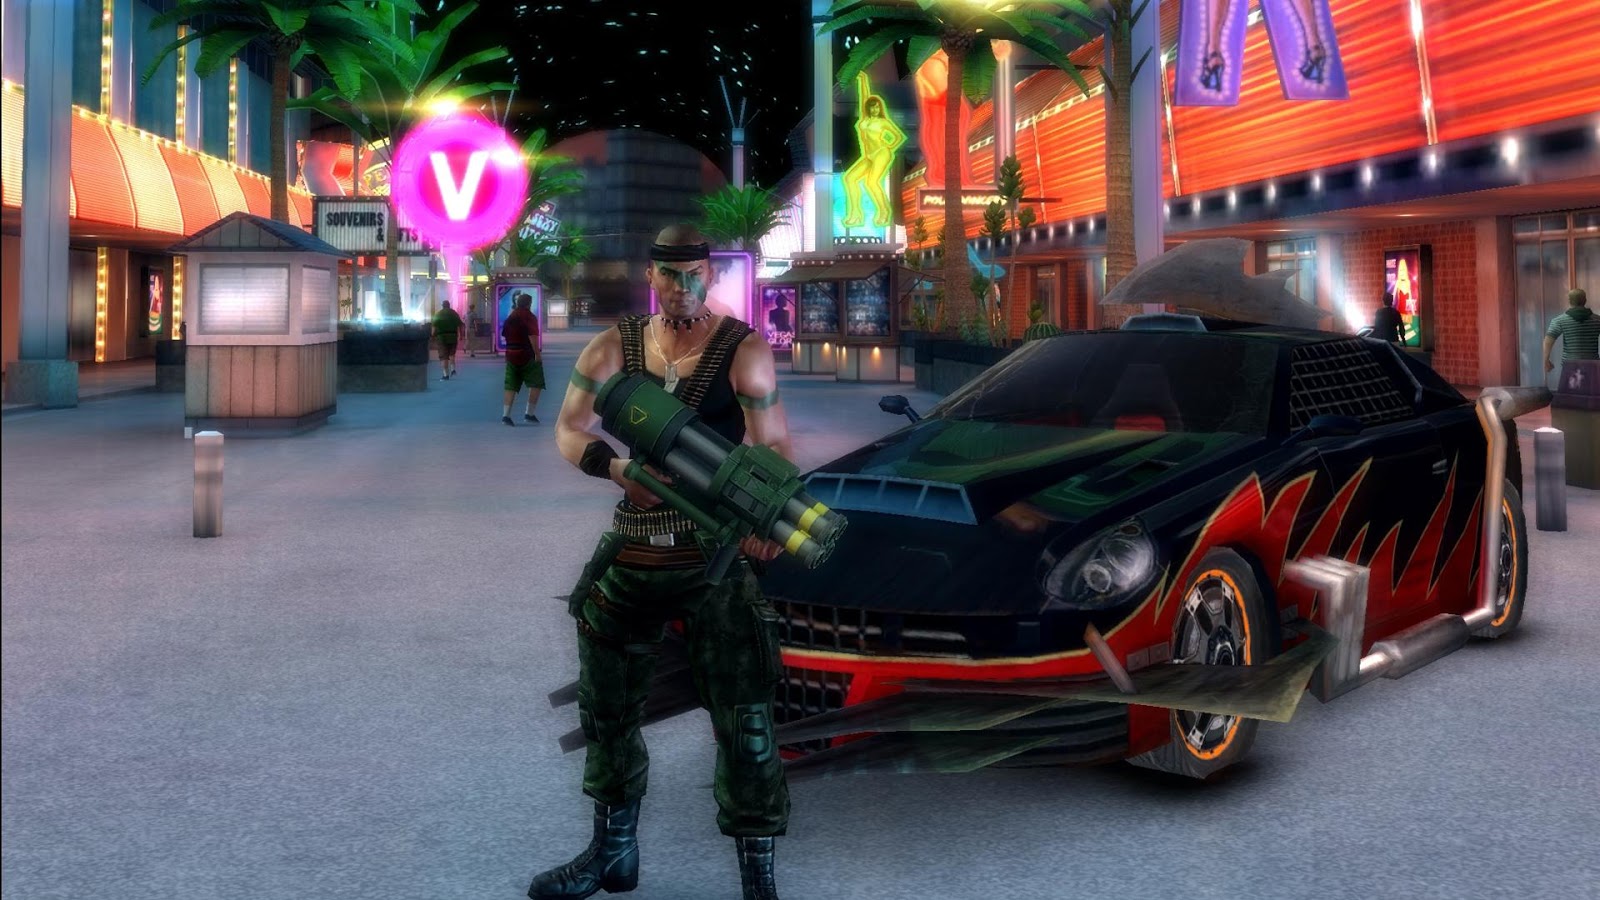 Gangstar Vegas e Minion Rush: veja os melhores jogos para Android